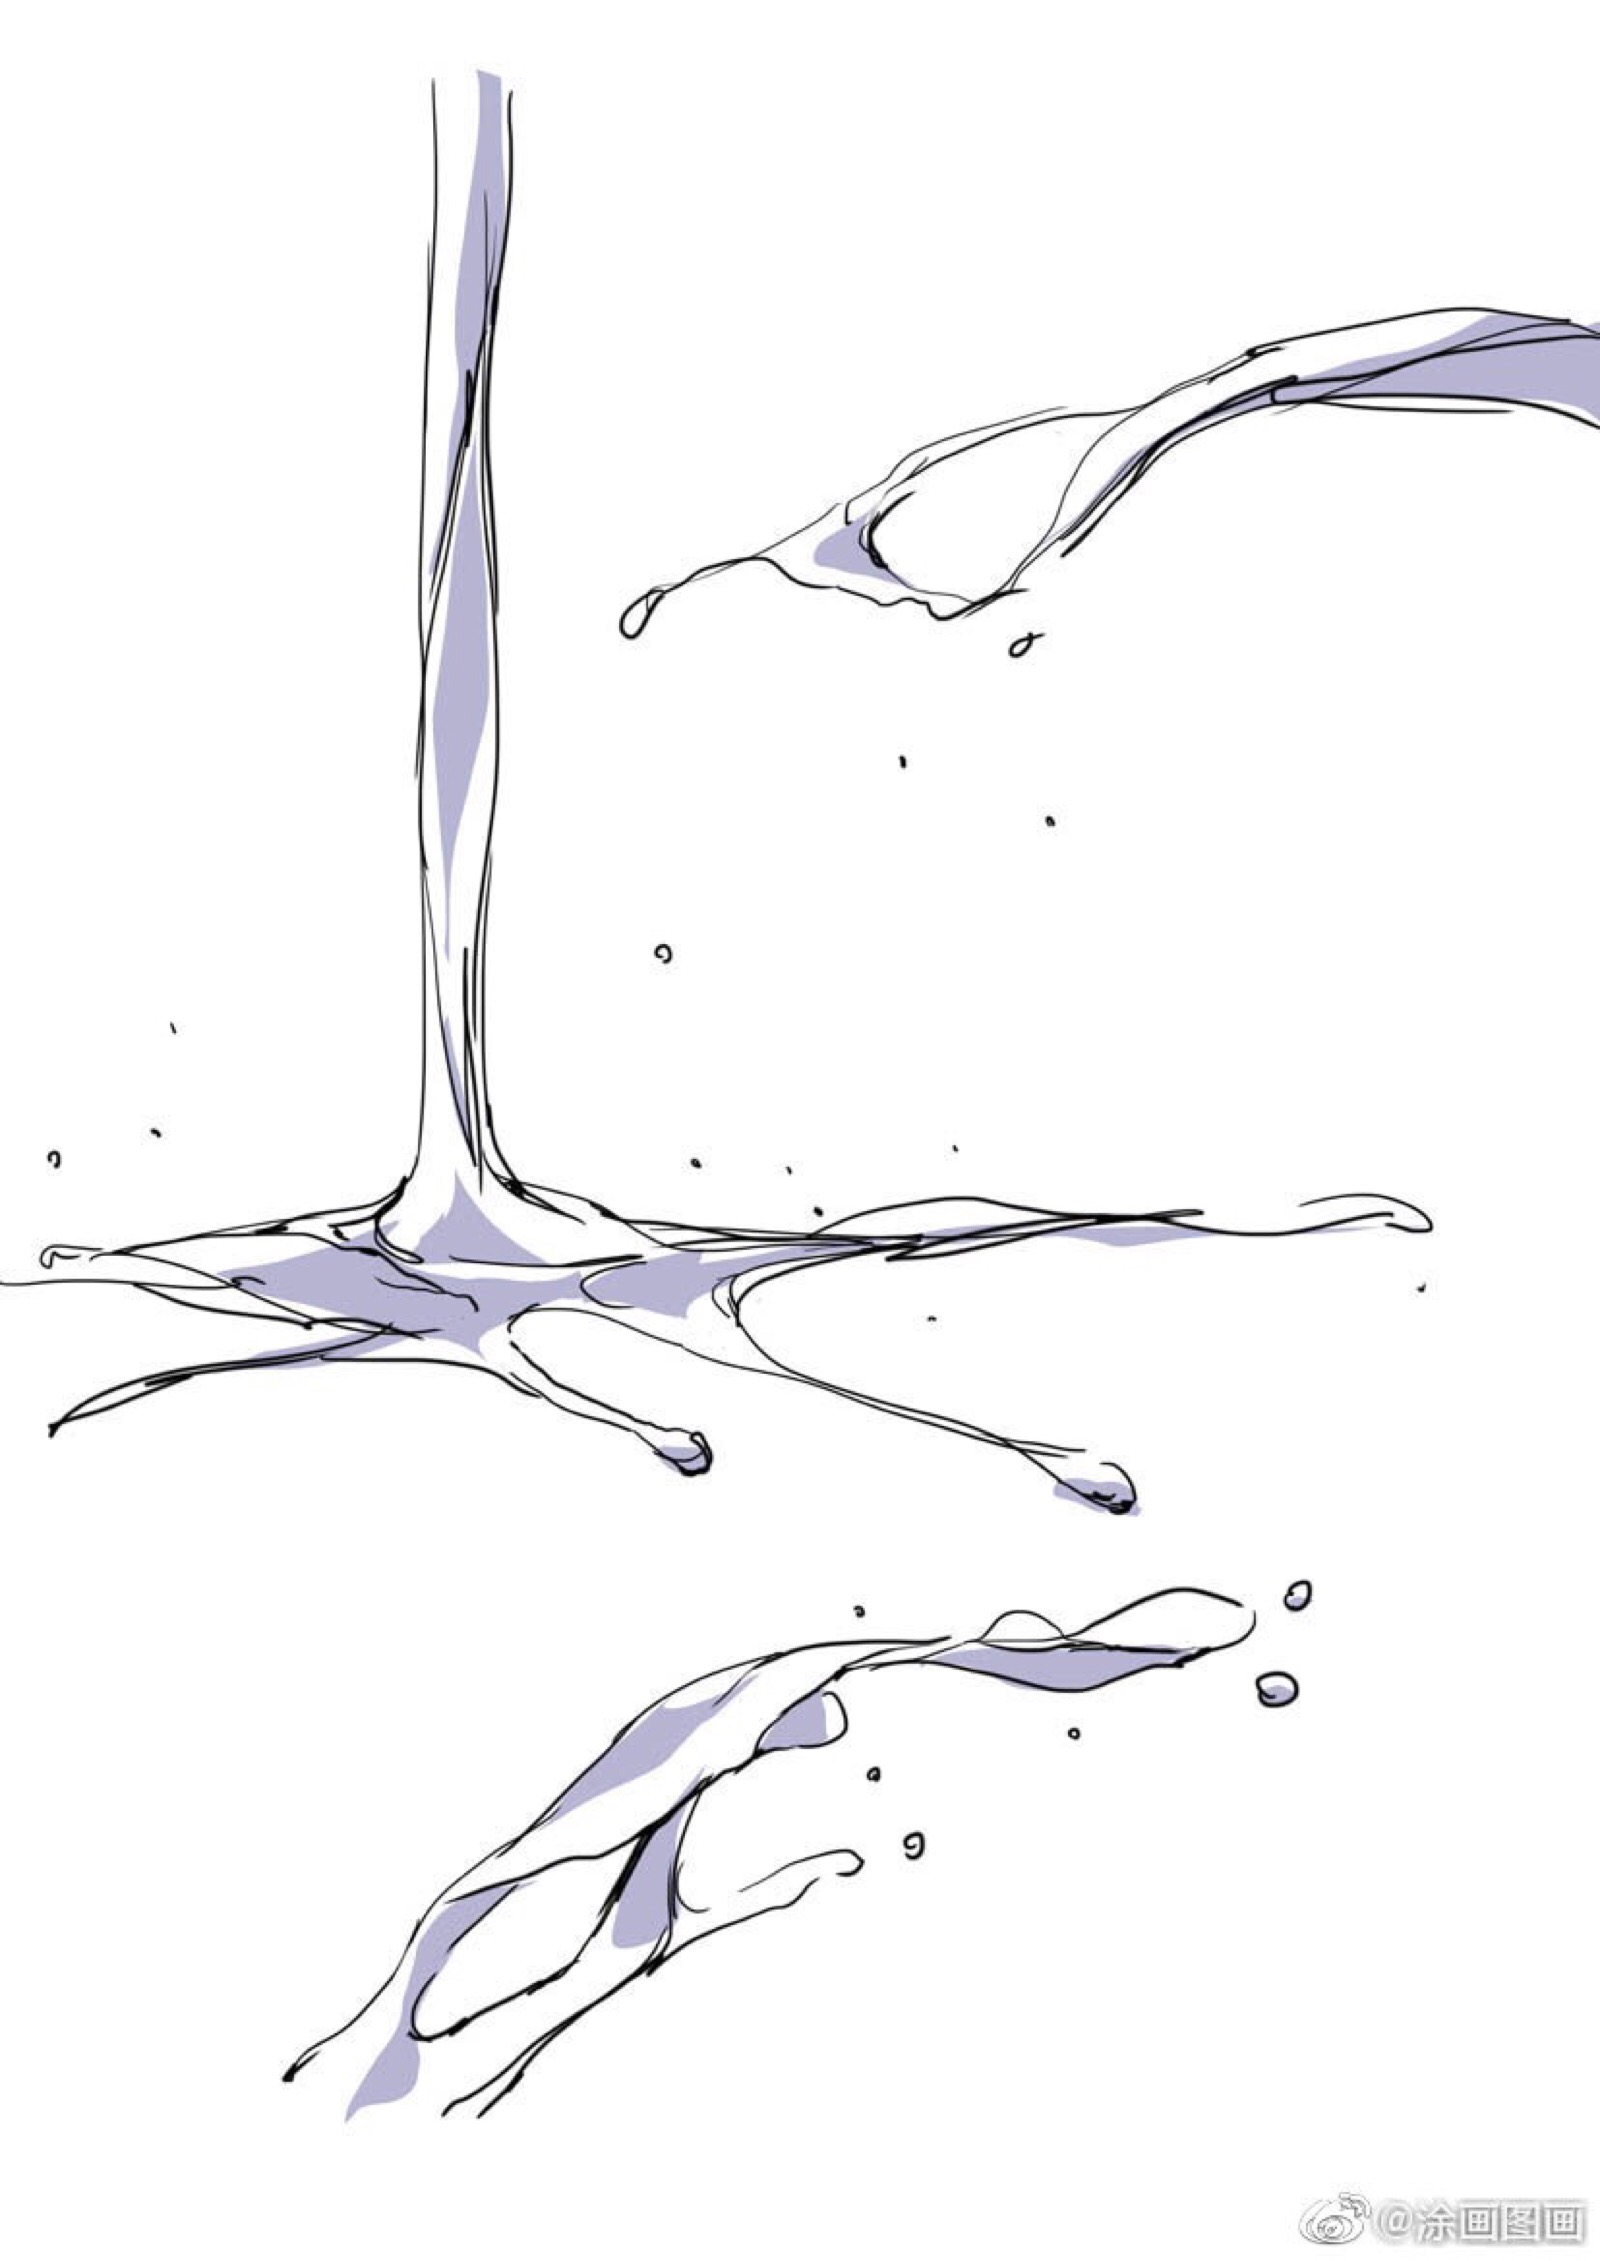 液体流下来的简笔画图片